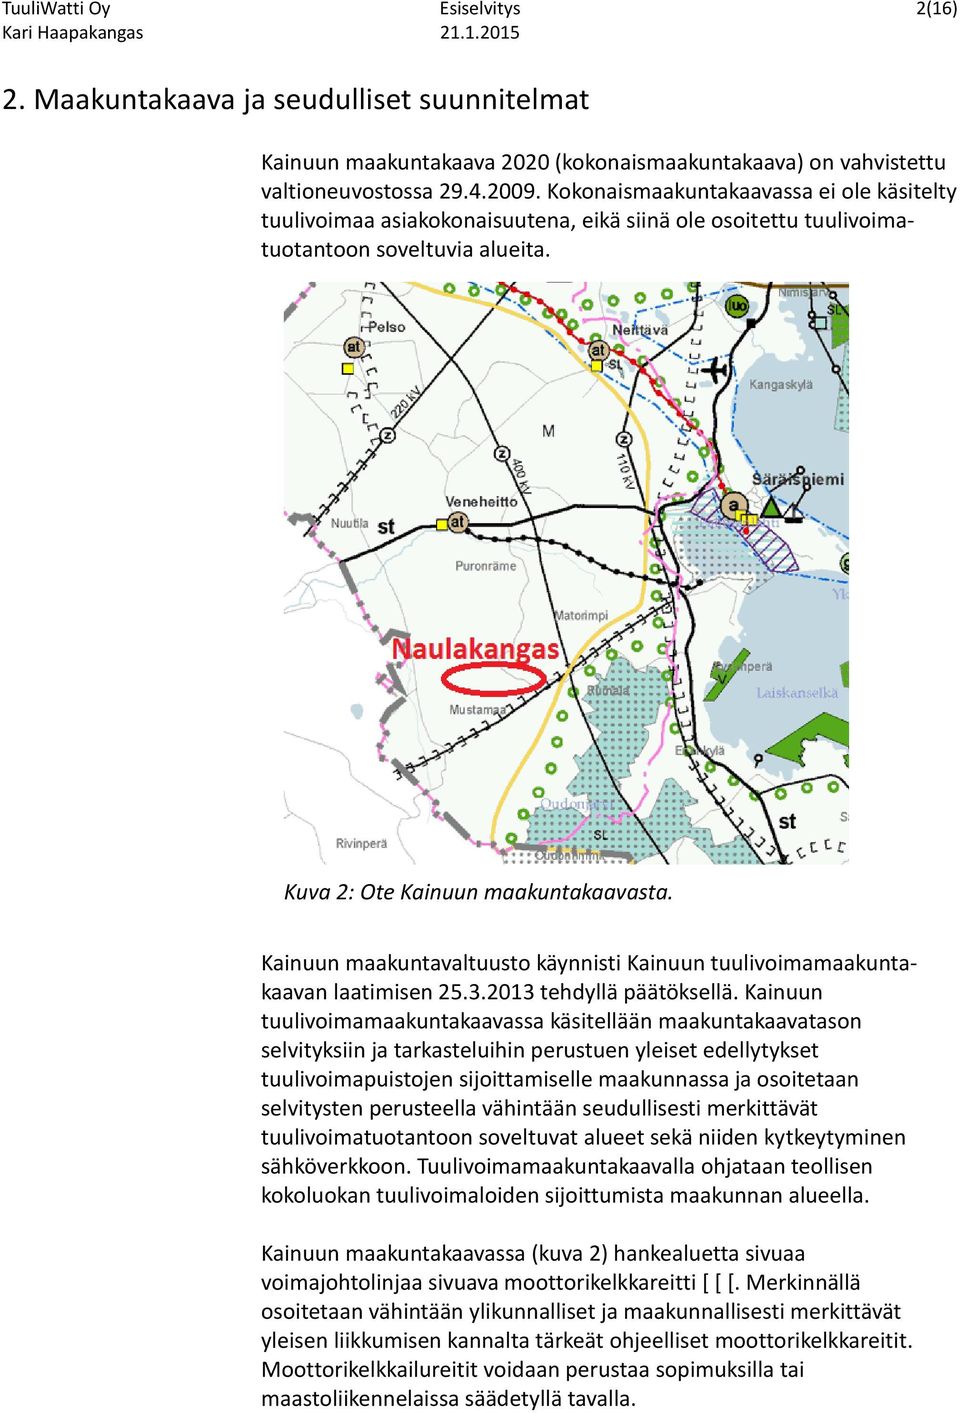 Kainuun maakuntavaltuusto käynnisti Kainuun tuulivoimamaakuntakaavan laatimisen 25.3.2013 tehdyllä päätöksellä.